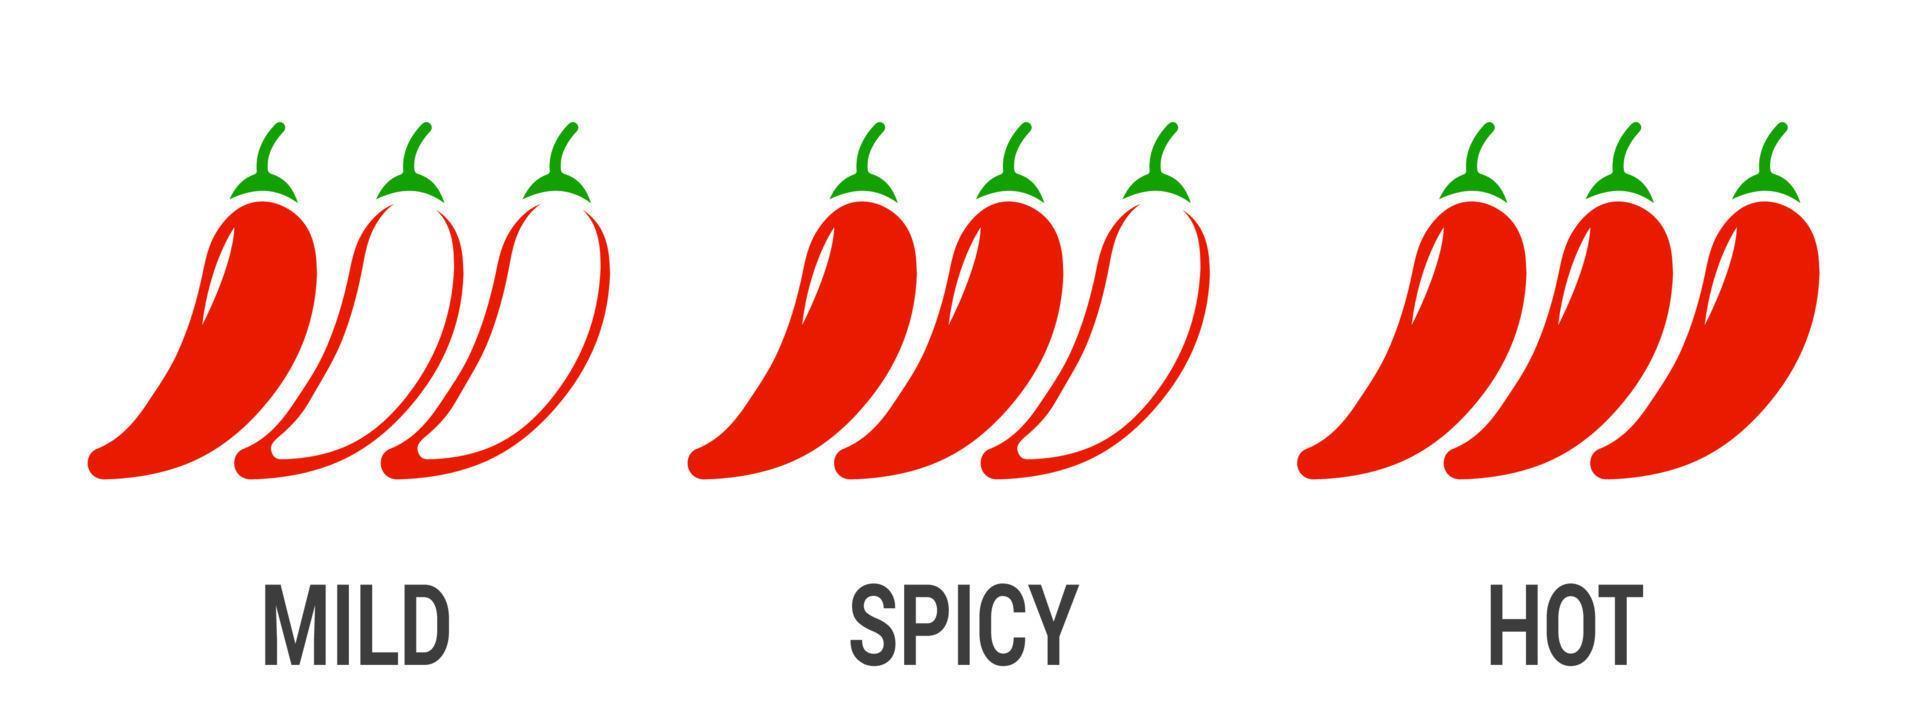 etiquetas de nivel de chile picante. comida picante vectorial salsa picante suave y extra, iconos de contorno rojo de chile. eps 10 vector